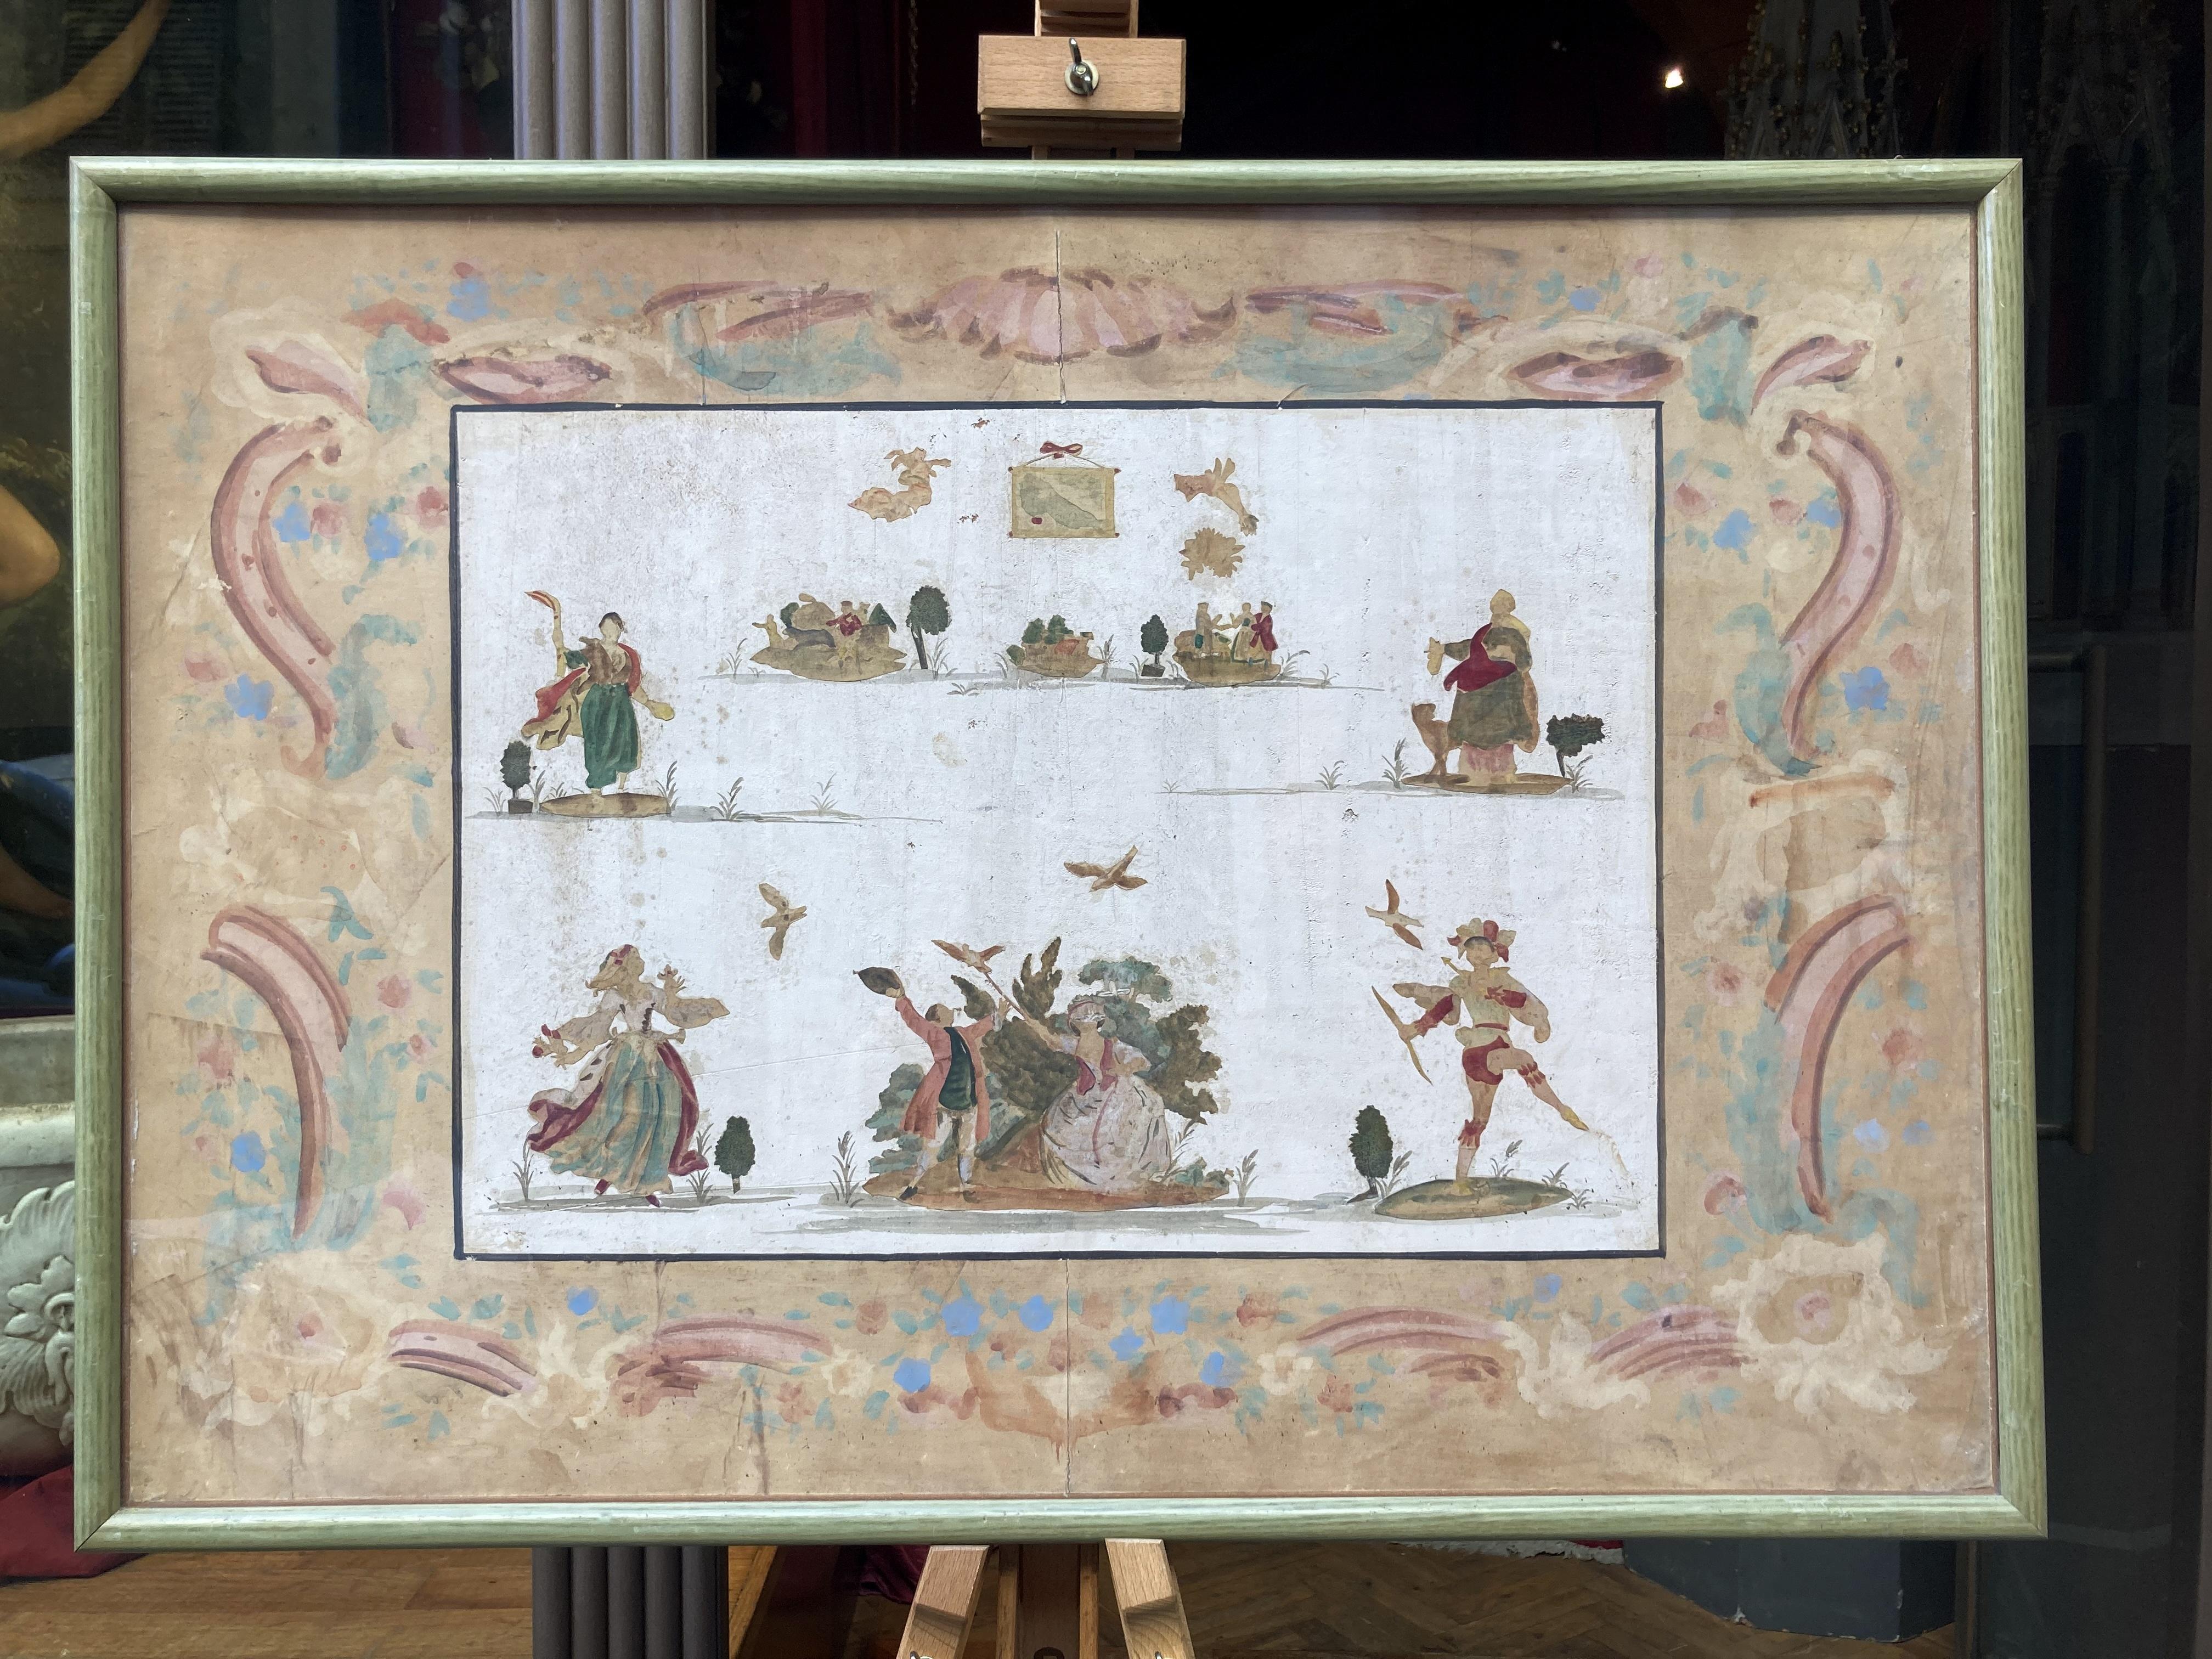 Cet ensemble de quatre peintures italiennes anciennes du XIXe siècle sur papier, réalisées à la main avec de la gouache, de la détrempe et de l'aquarelle, présente plusieurs silhouettes de personnages jouant dans une pièce de théâtre.
Ces œuvres